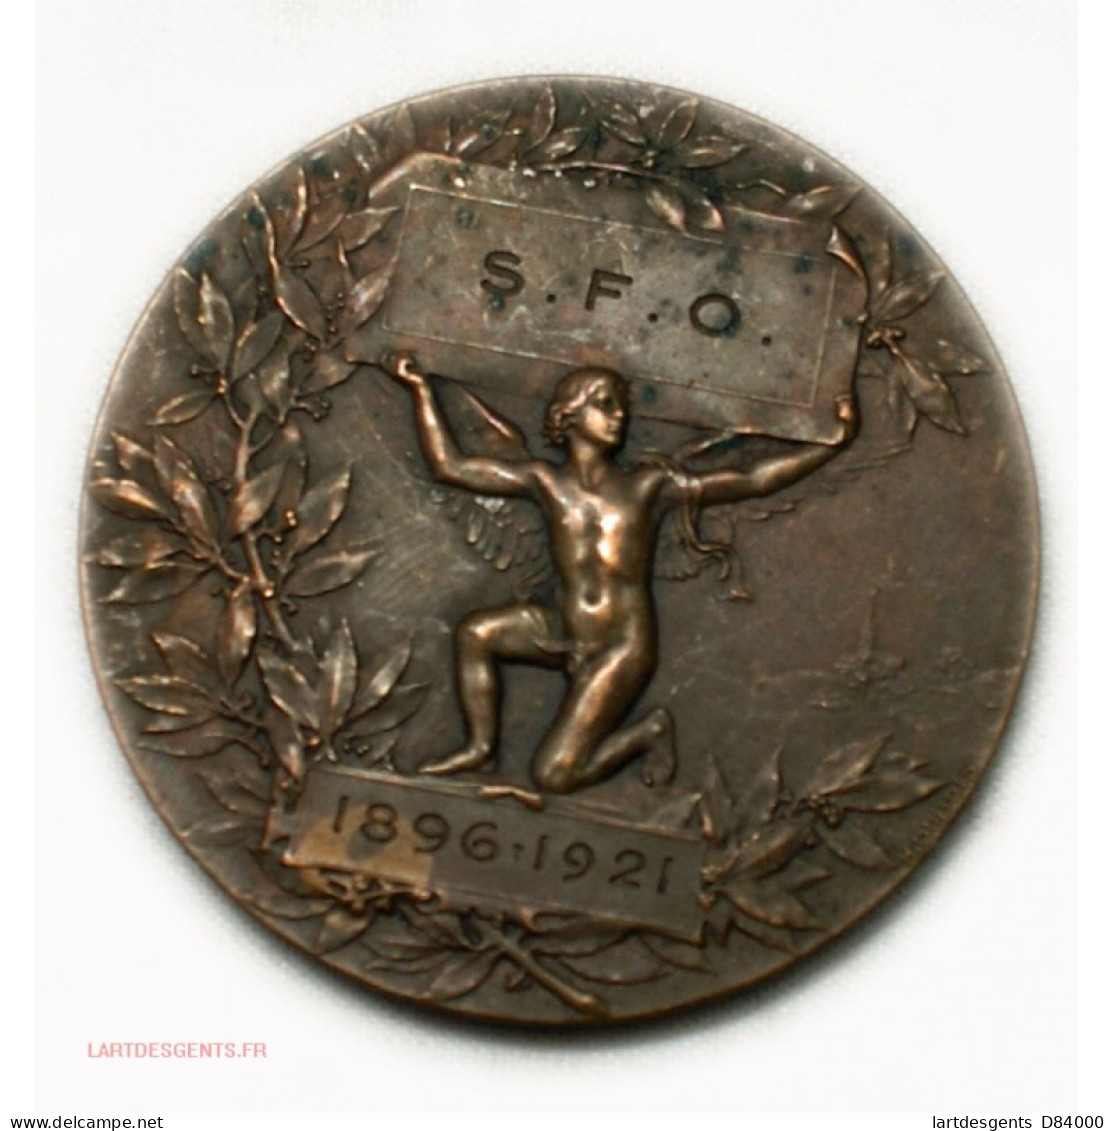 Médaille S.F.O 1896-1921 Par H. DUBOIS - Adel